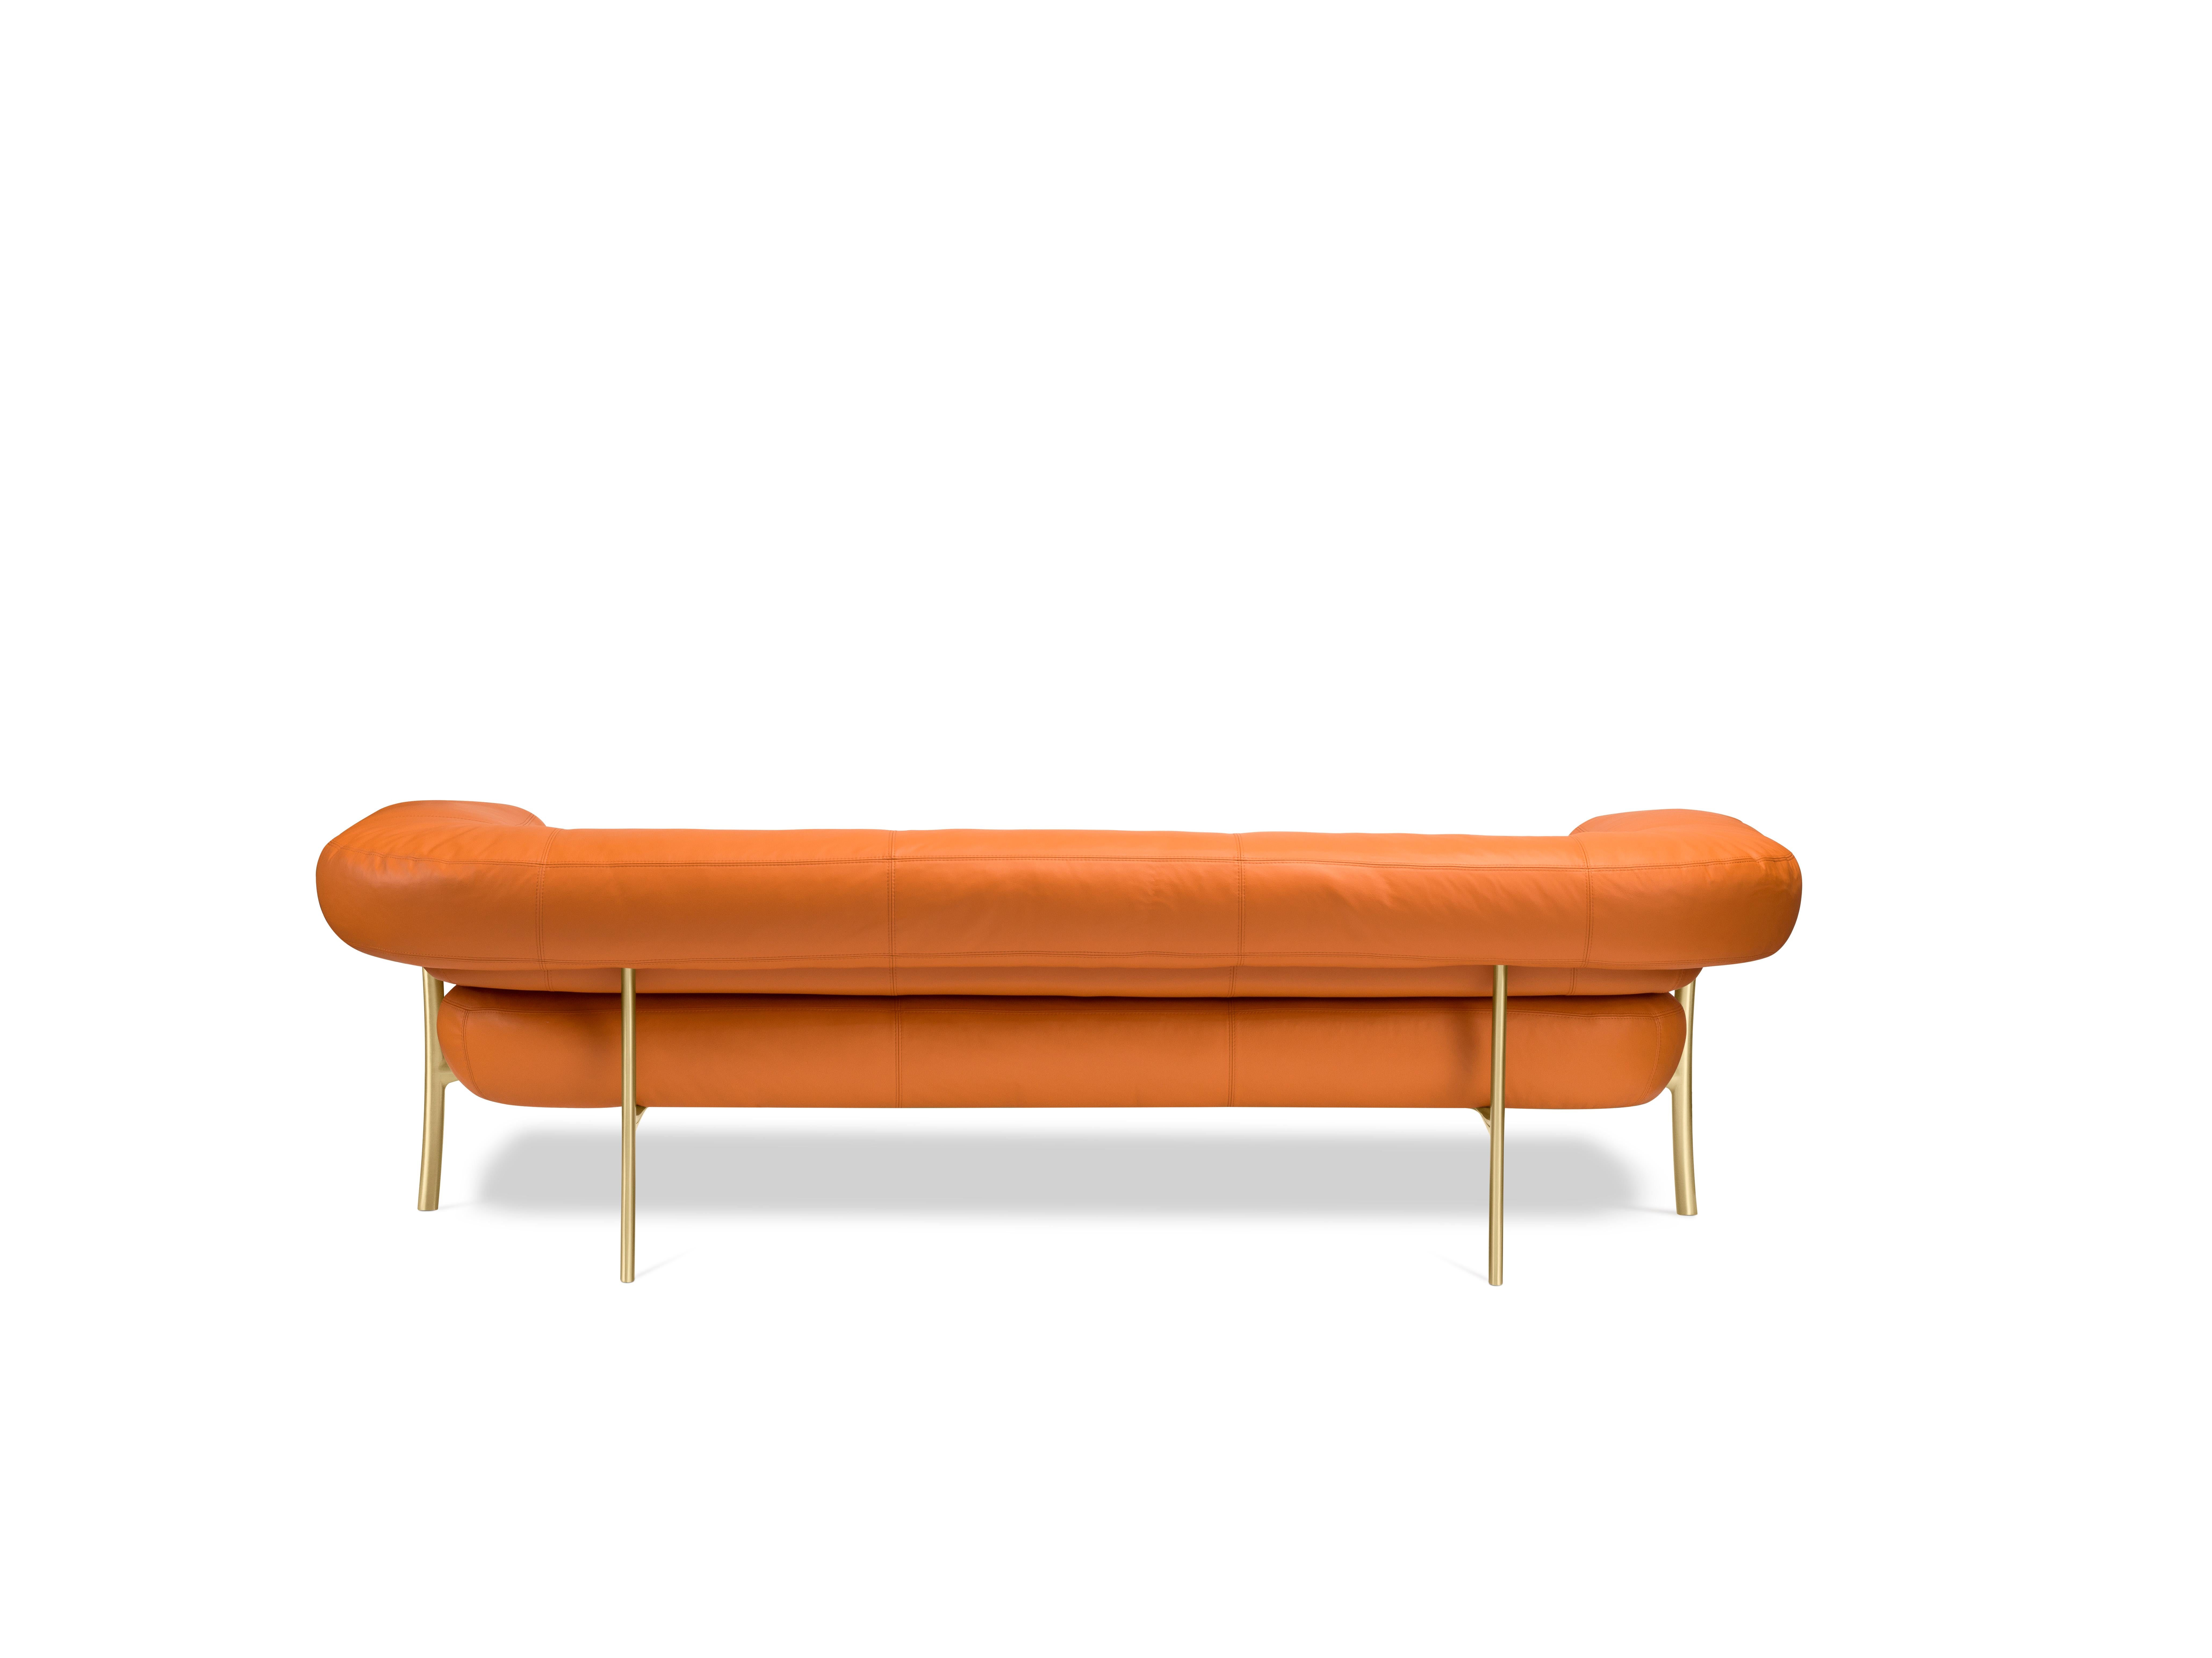 Bei dem Sofa Katana hat Paolo Rizzatto als raffinierter und erfahrener Designer die Proportionen der Strukturelemente des Produkts mit großer Sorgfalt gewählt. Beim elliptischen Bein wurde jeder Millimeter entworfen und kalibriert, ebenso wie das